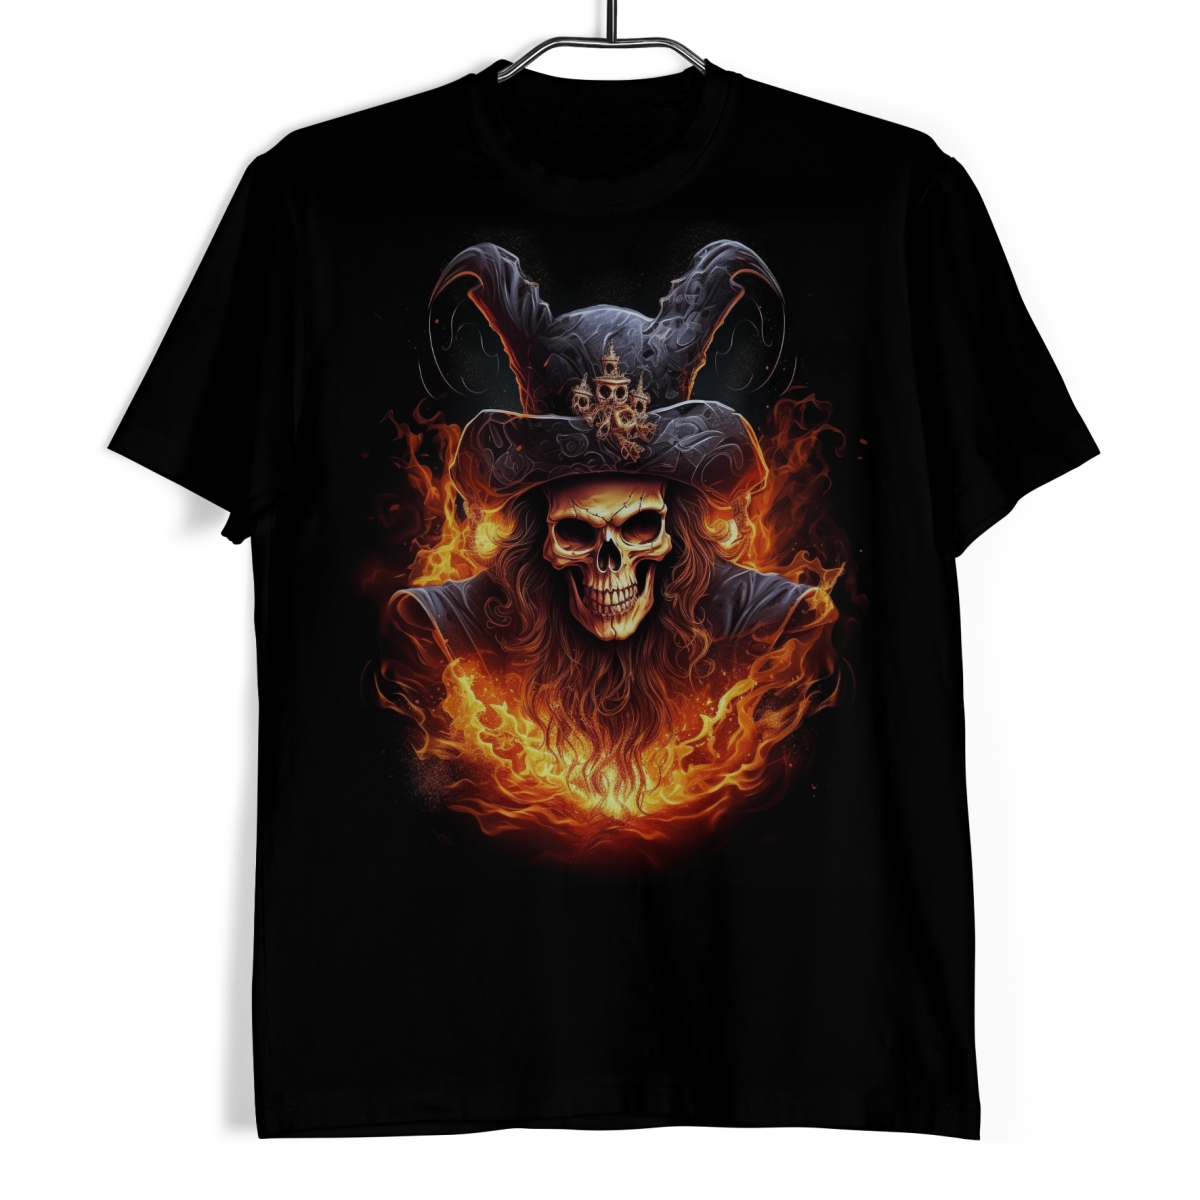 Tričko s lebkou - Pirát v plamenech XL